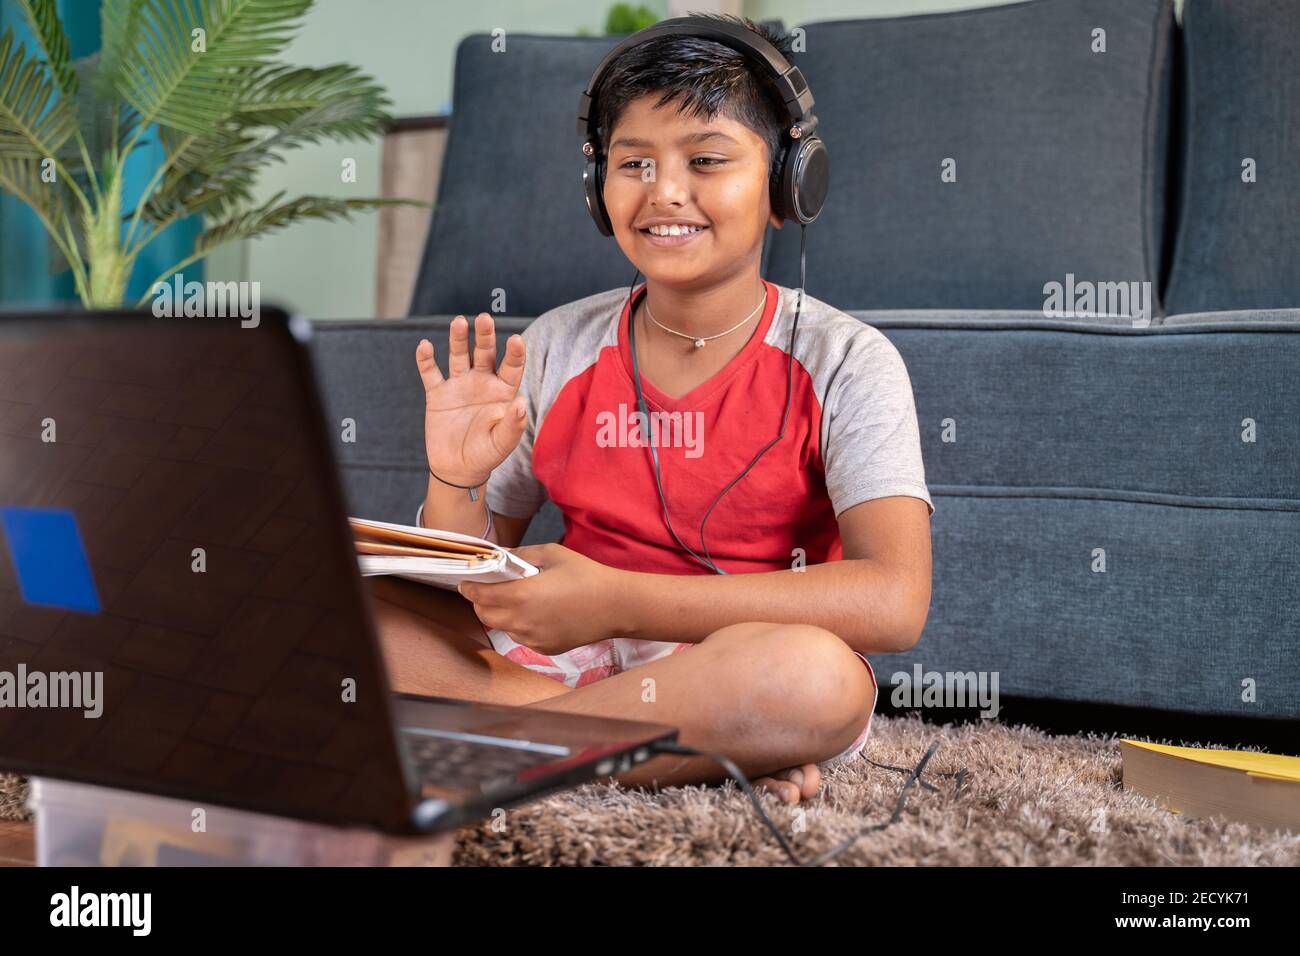 Kleines Kind mit Kopfhörern und Büchern im Handtelefon begrüßt seine Tutor während der Online-Klasse auf Laptop zu Hause - Konzept Des virtuellen Educatiom Stockfoto